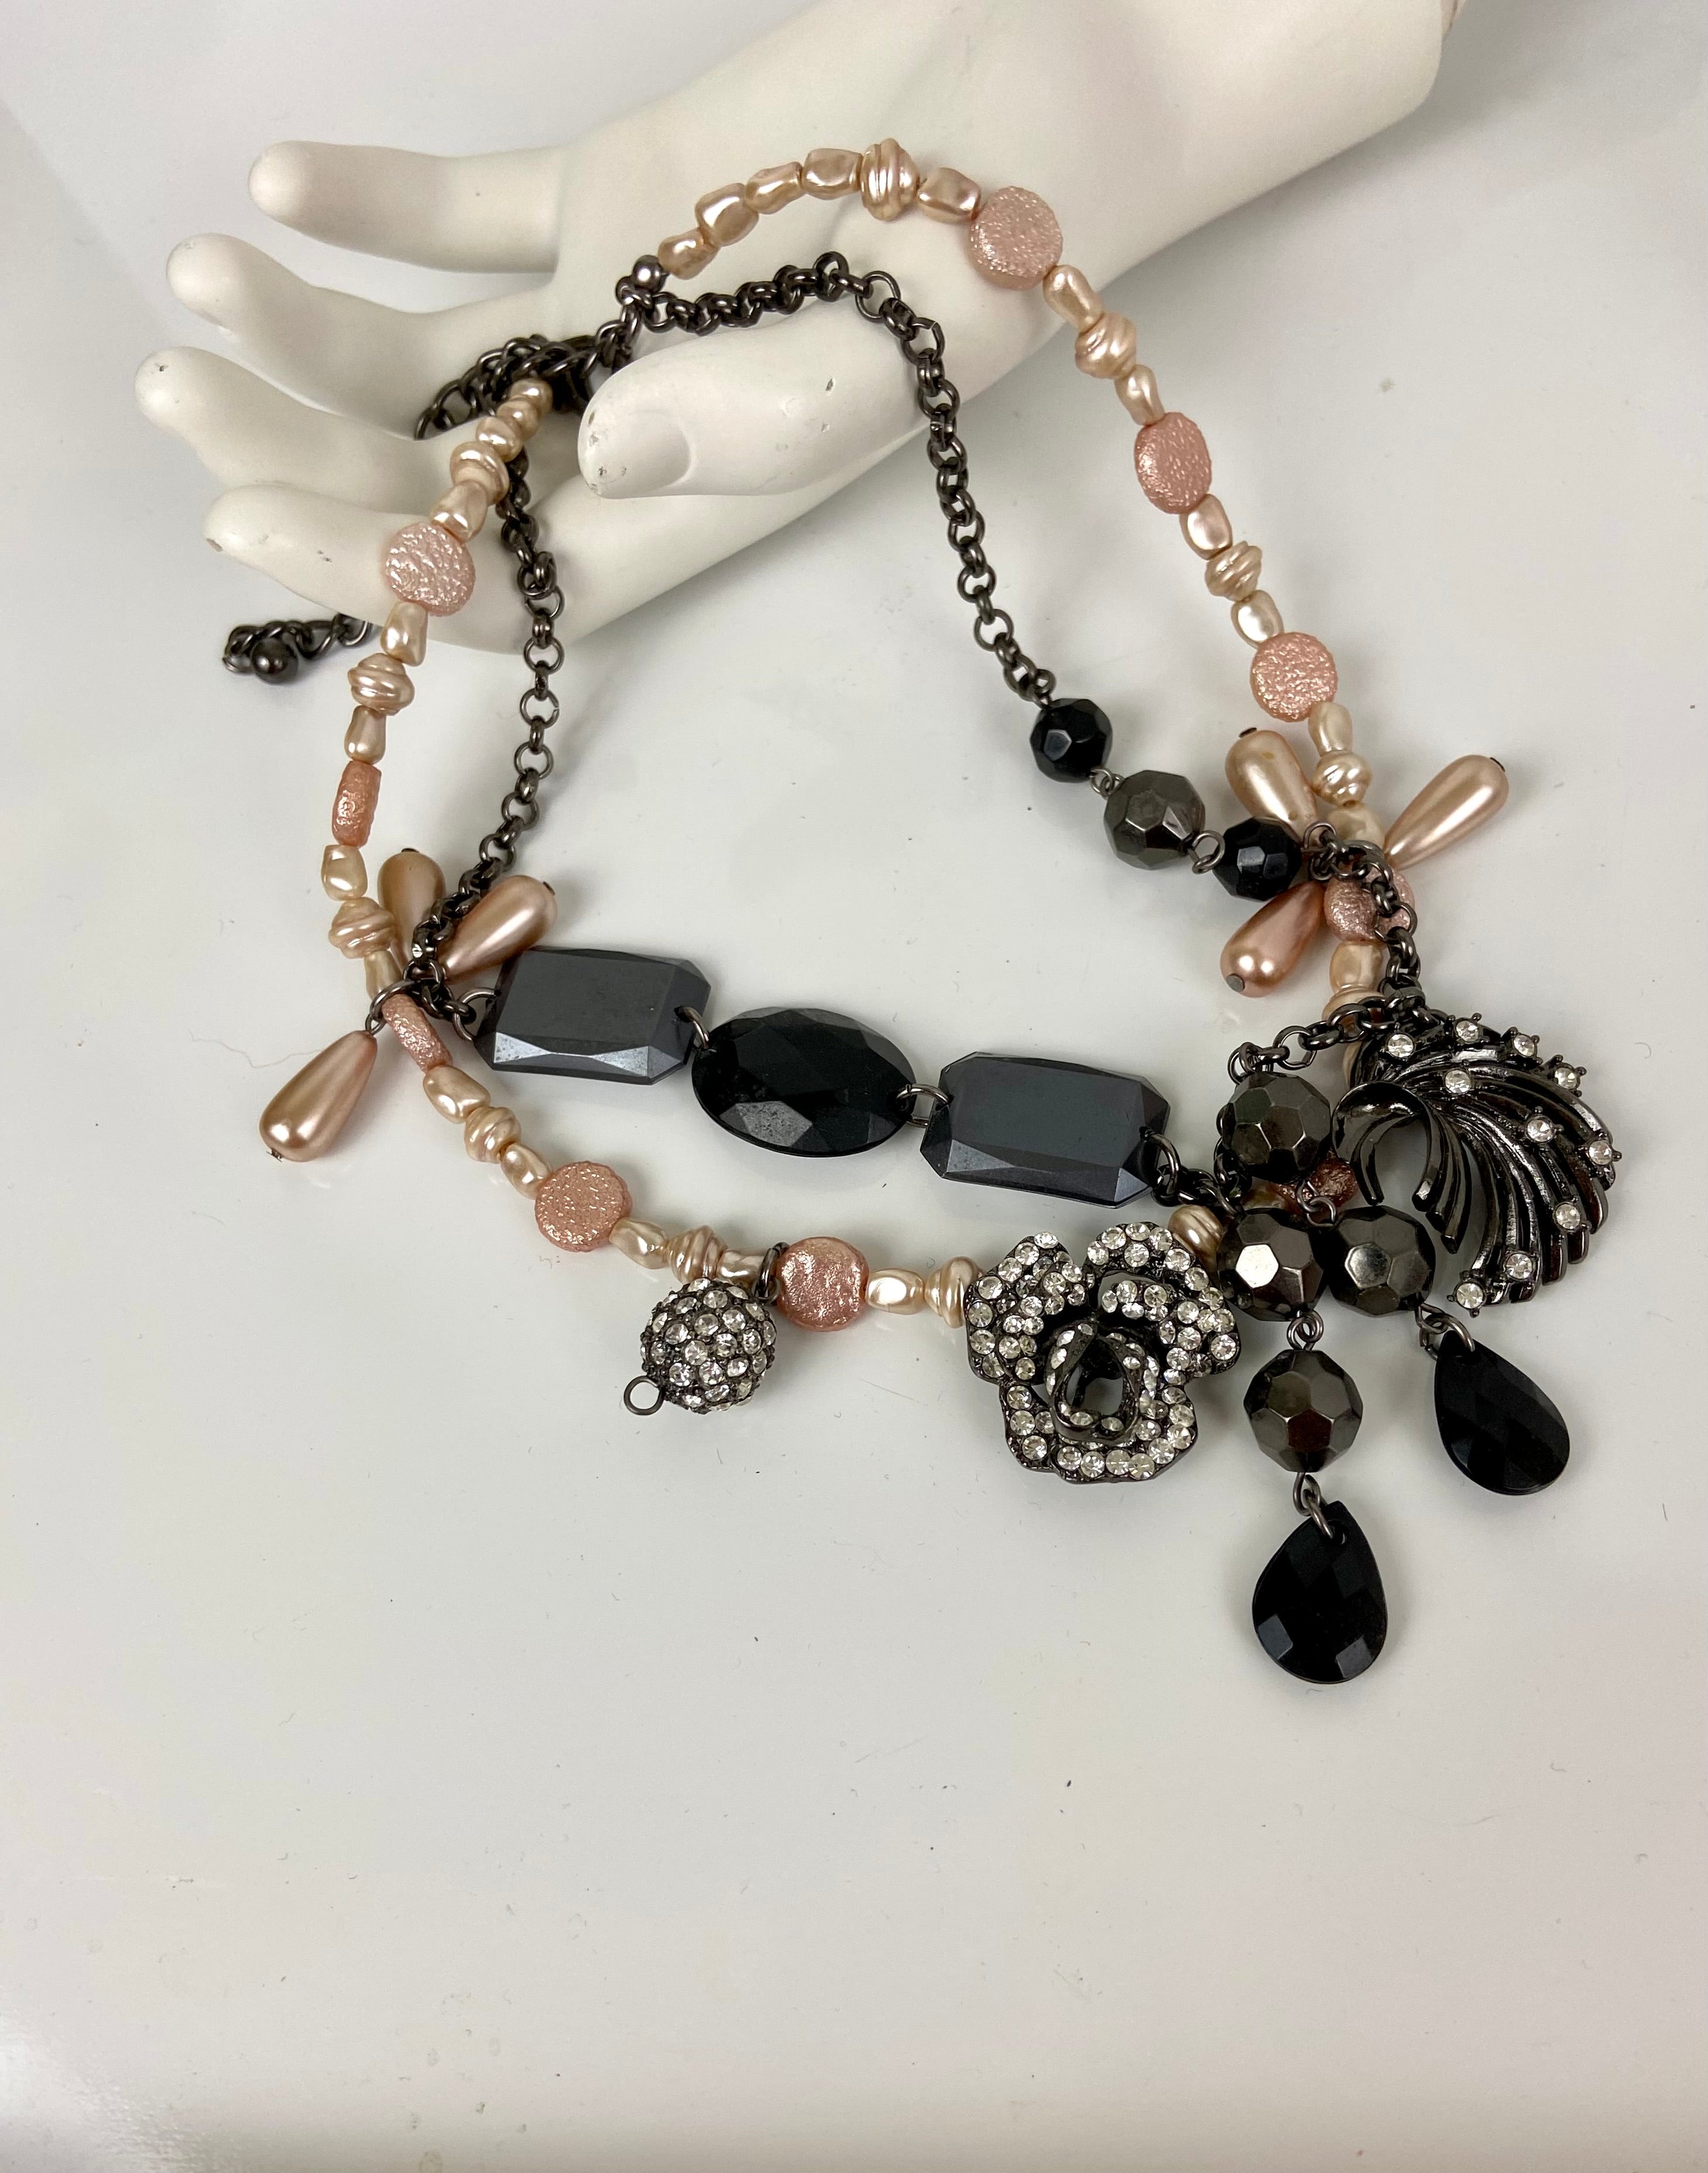 Black gemstones and layered beads choker